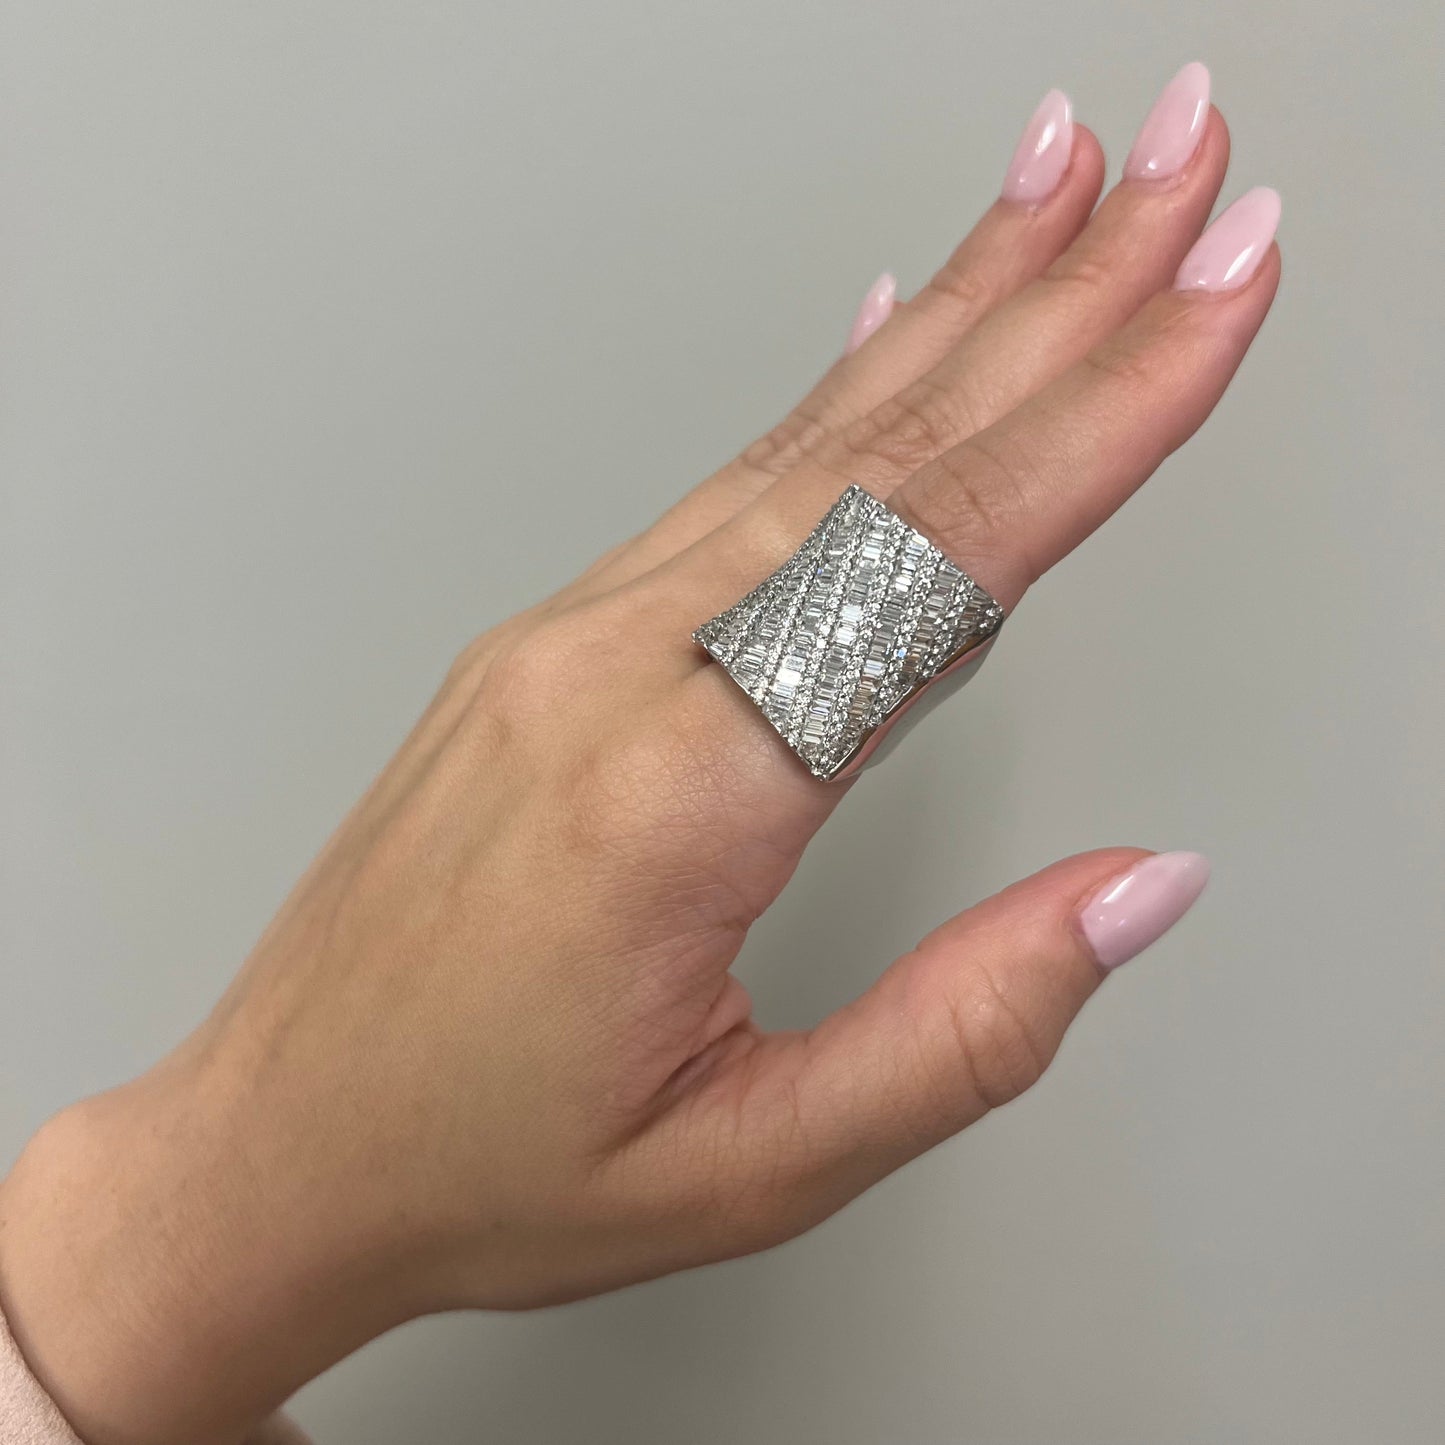 Chatila 1980s 18KT White Gold Diamond Ring worn on finger